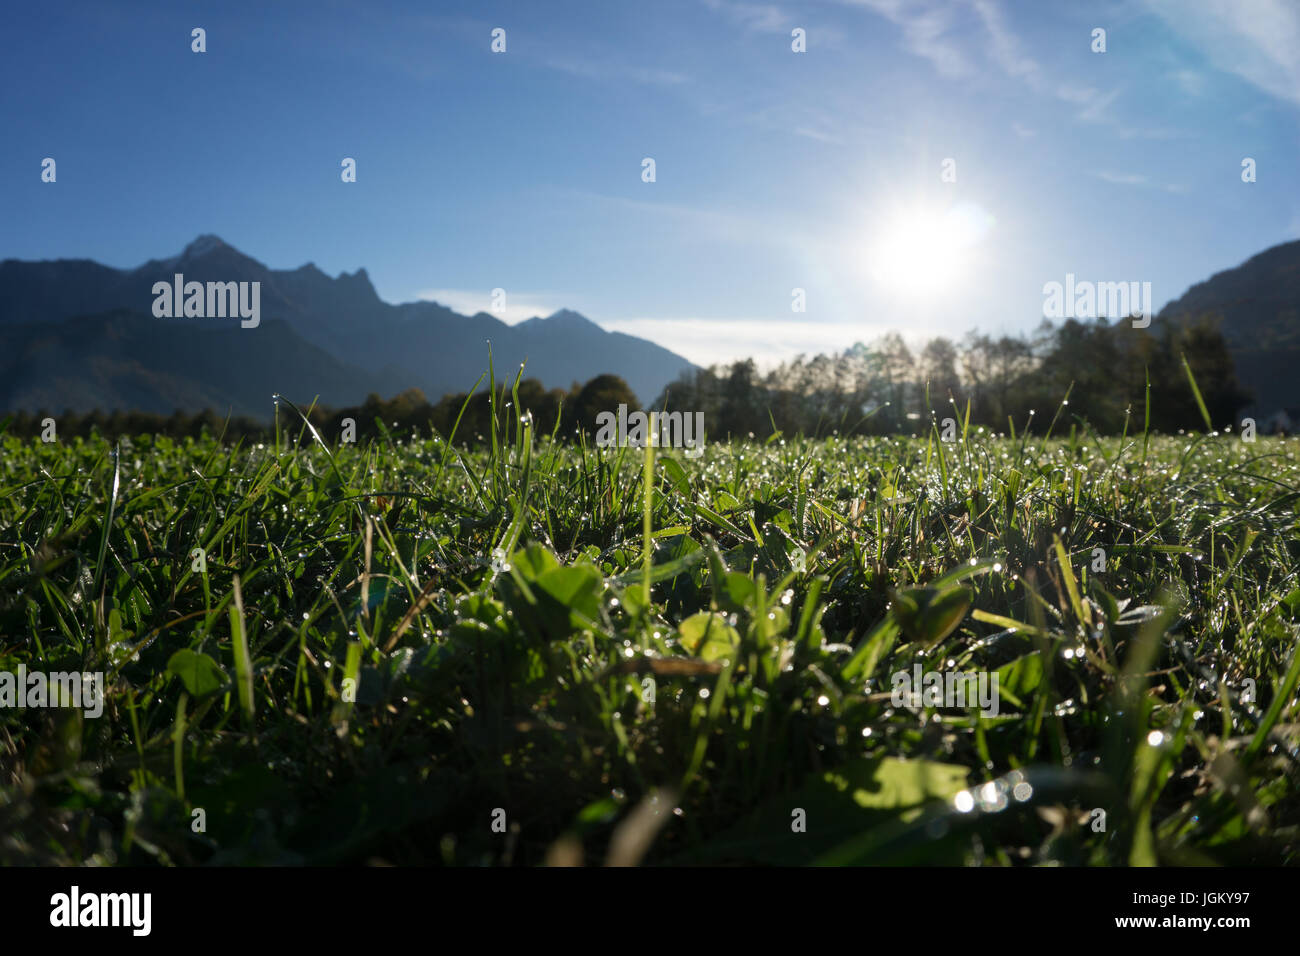 Europa Schweiz Sargans Wangs Weide im Gegenlicht starke Schatten Foto Stock